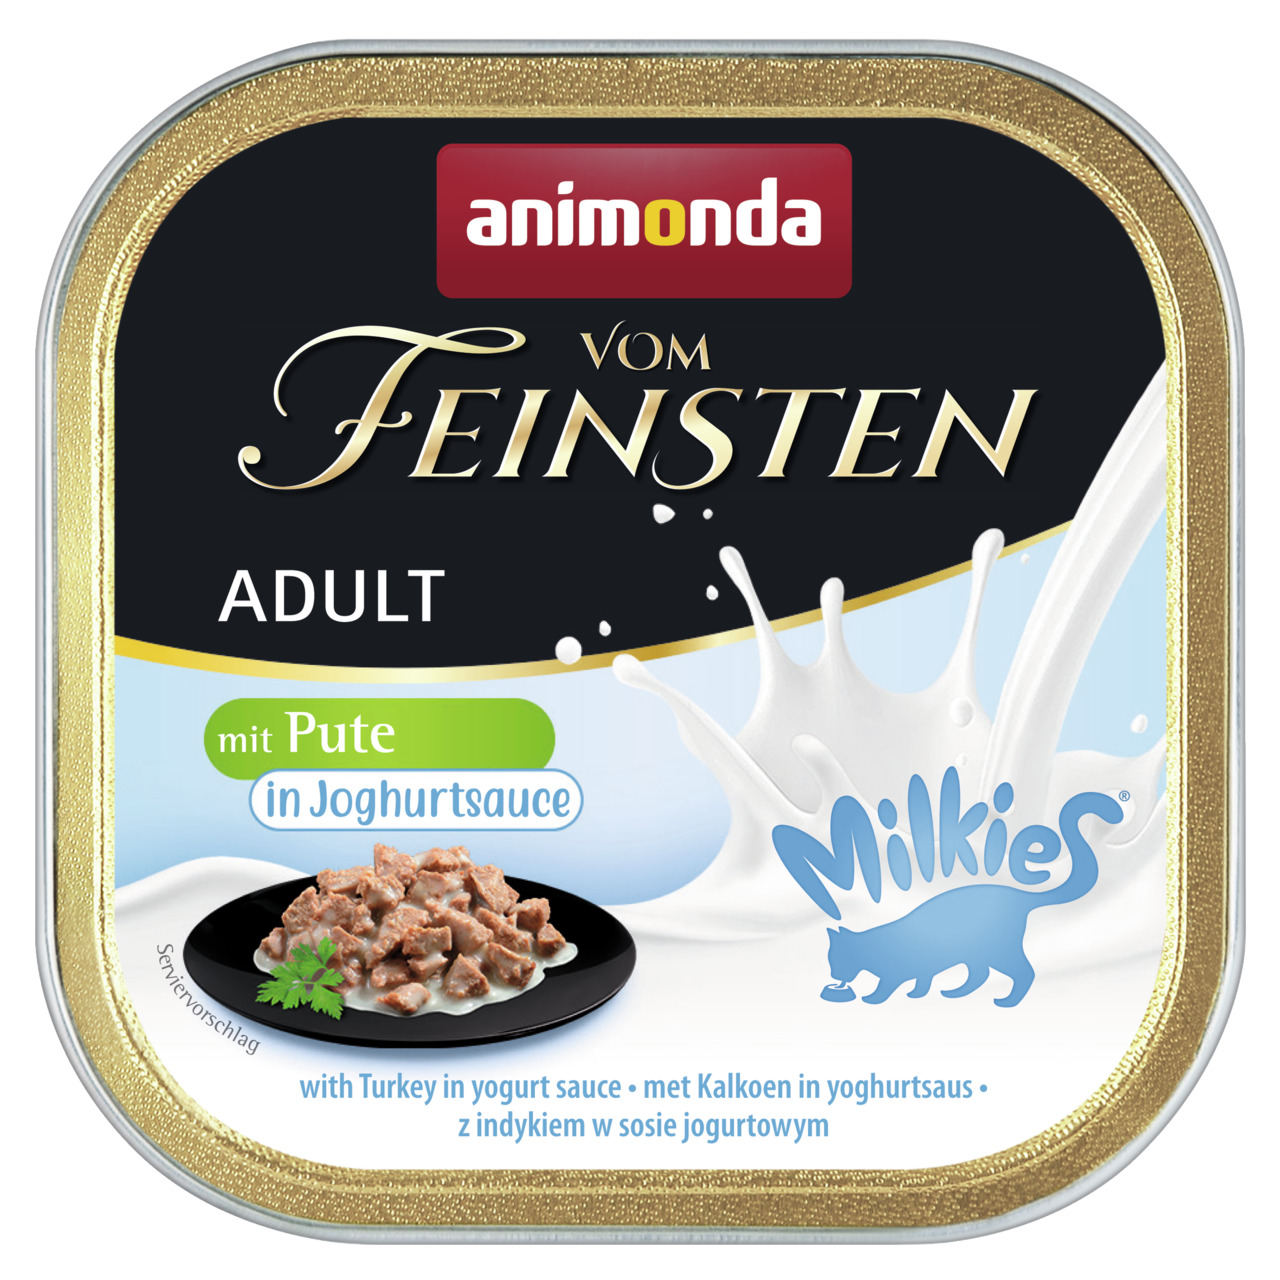 Animonda vom Feinsten Adult mit Milkies-Sauce mit Pute in Joghurtsauce Katzen Nassfutter 100 g